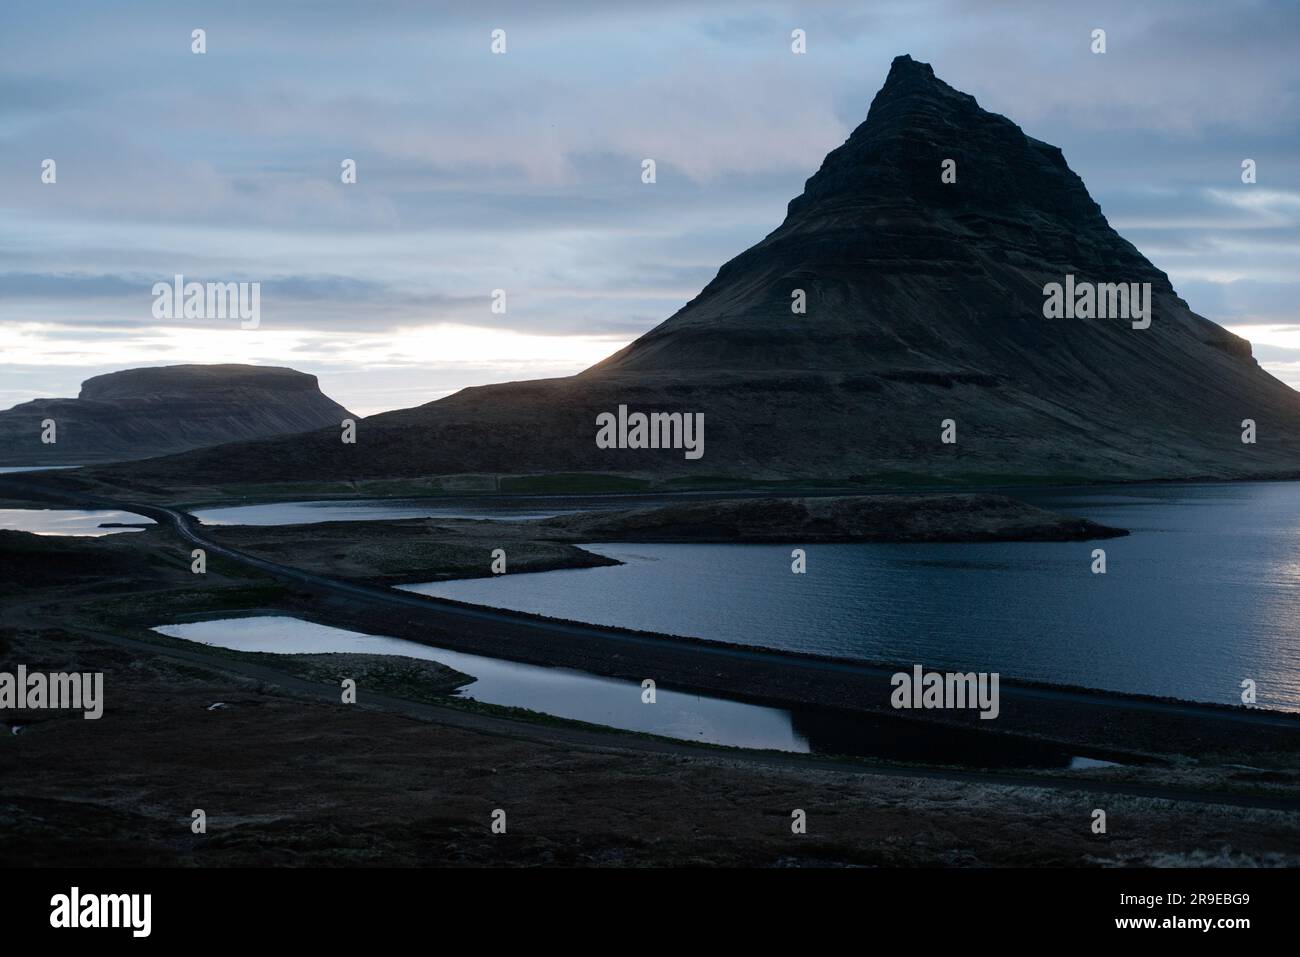 Immagine del paesaggio con una vista spettacolare del monte Kirkjufell e dell'oceano Atlantico, nella penisola di Snaefellsness in Islanda. Foto Stock